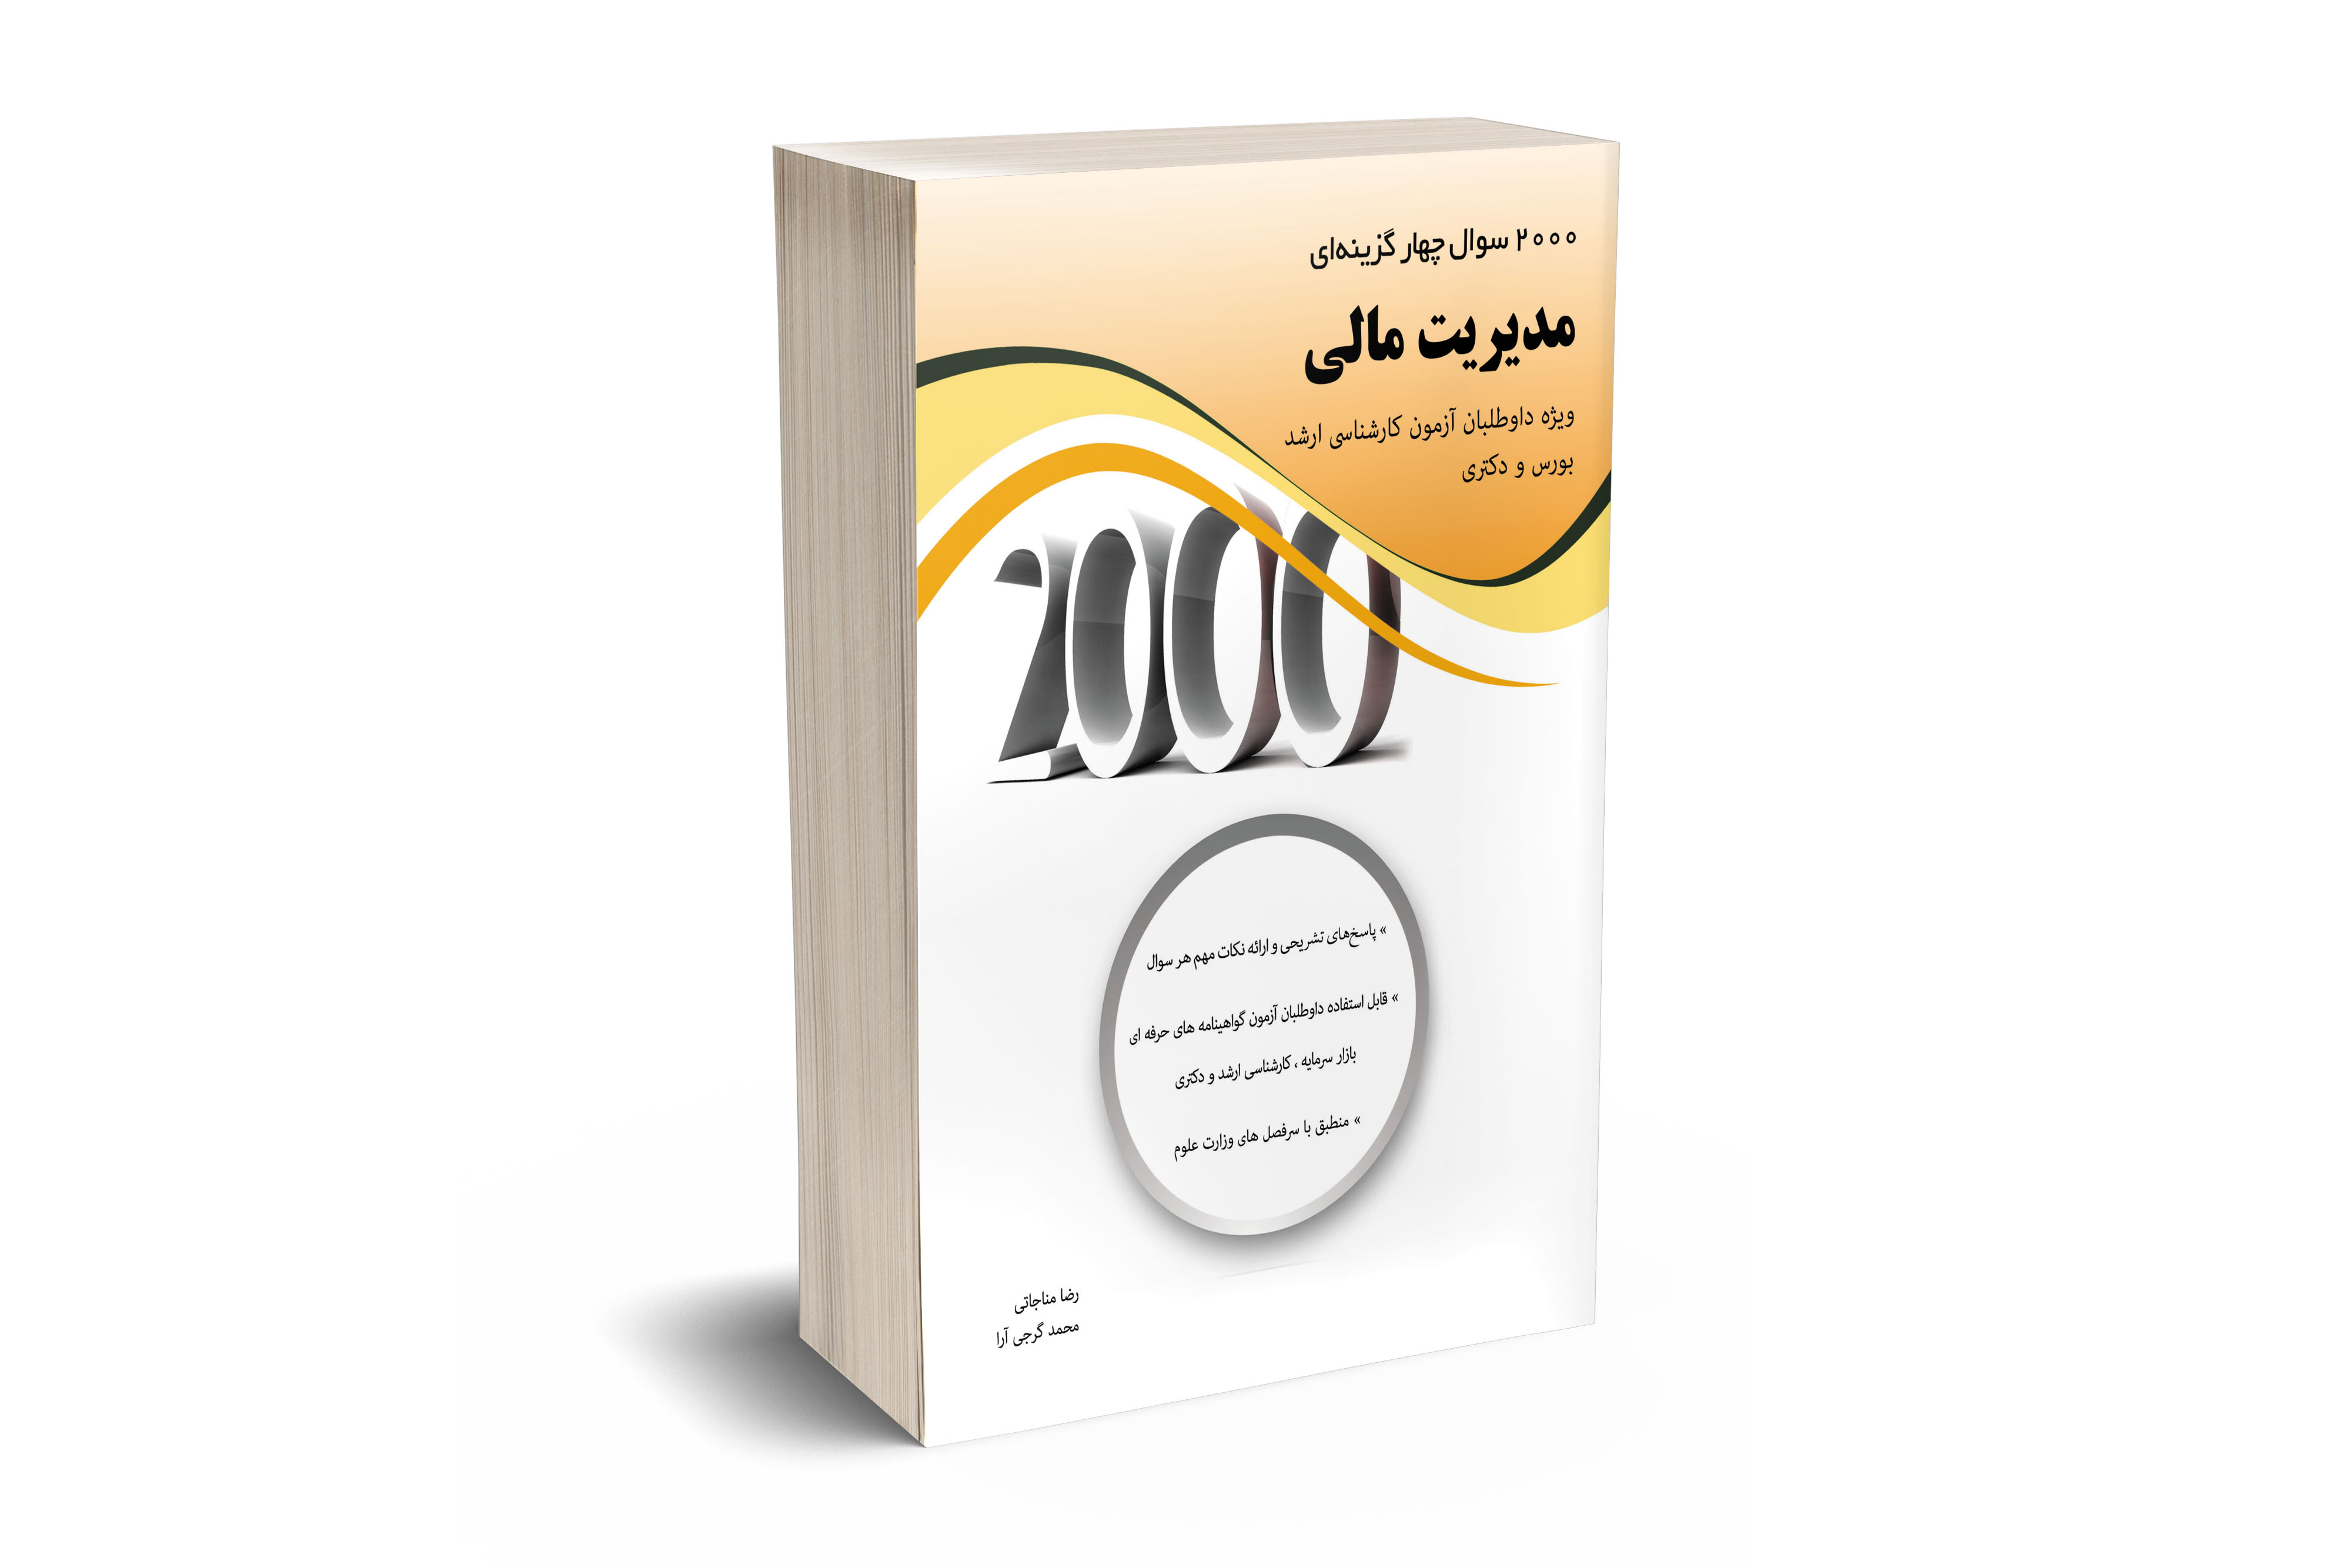 2000 سوال چهارگزینه ای مدیریت مالی 